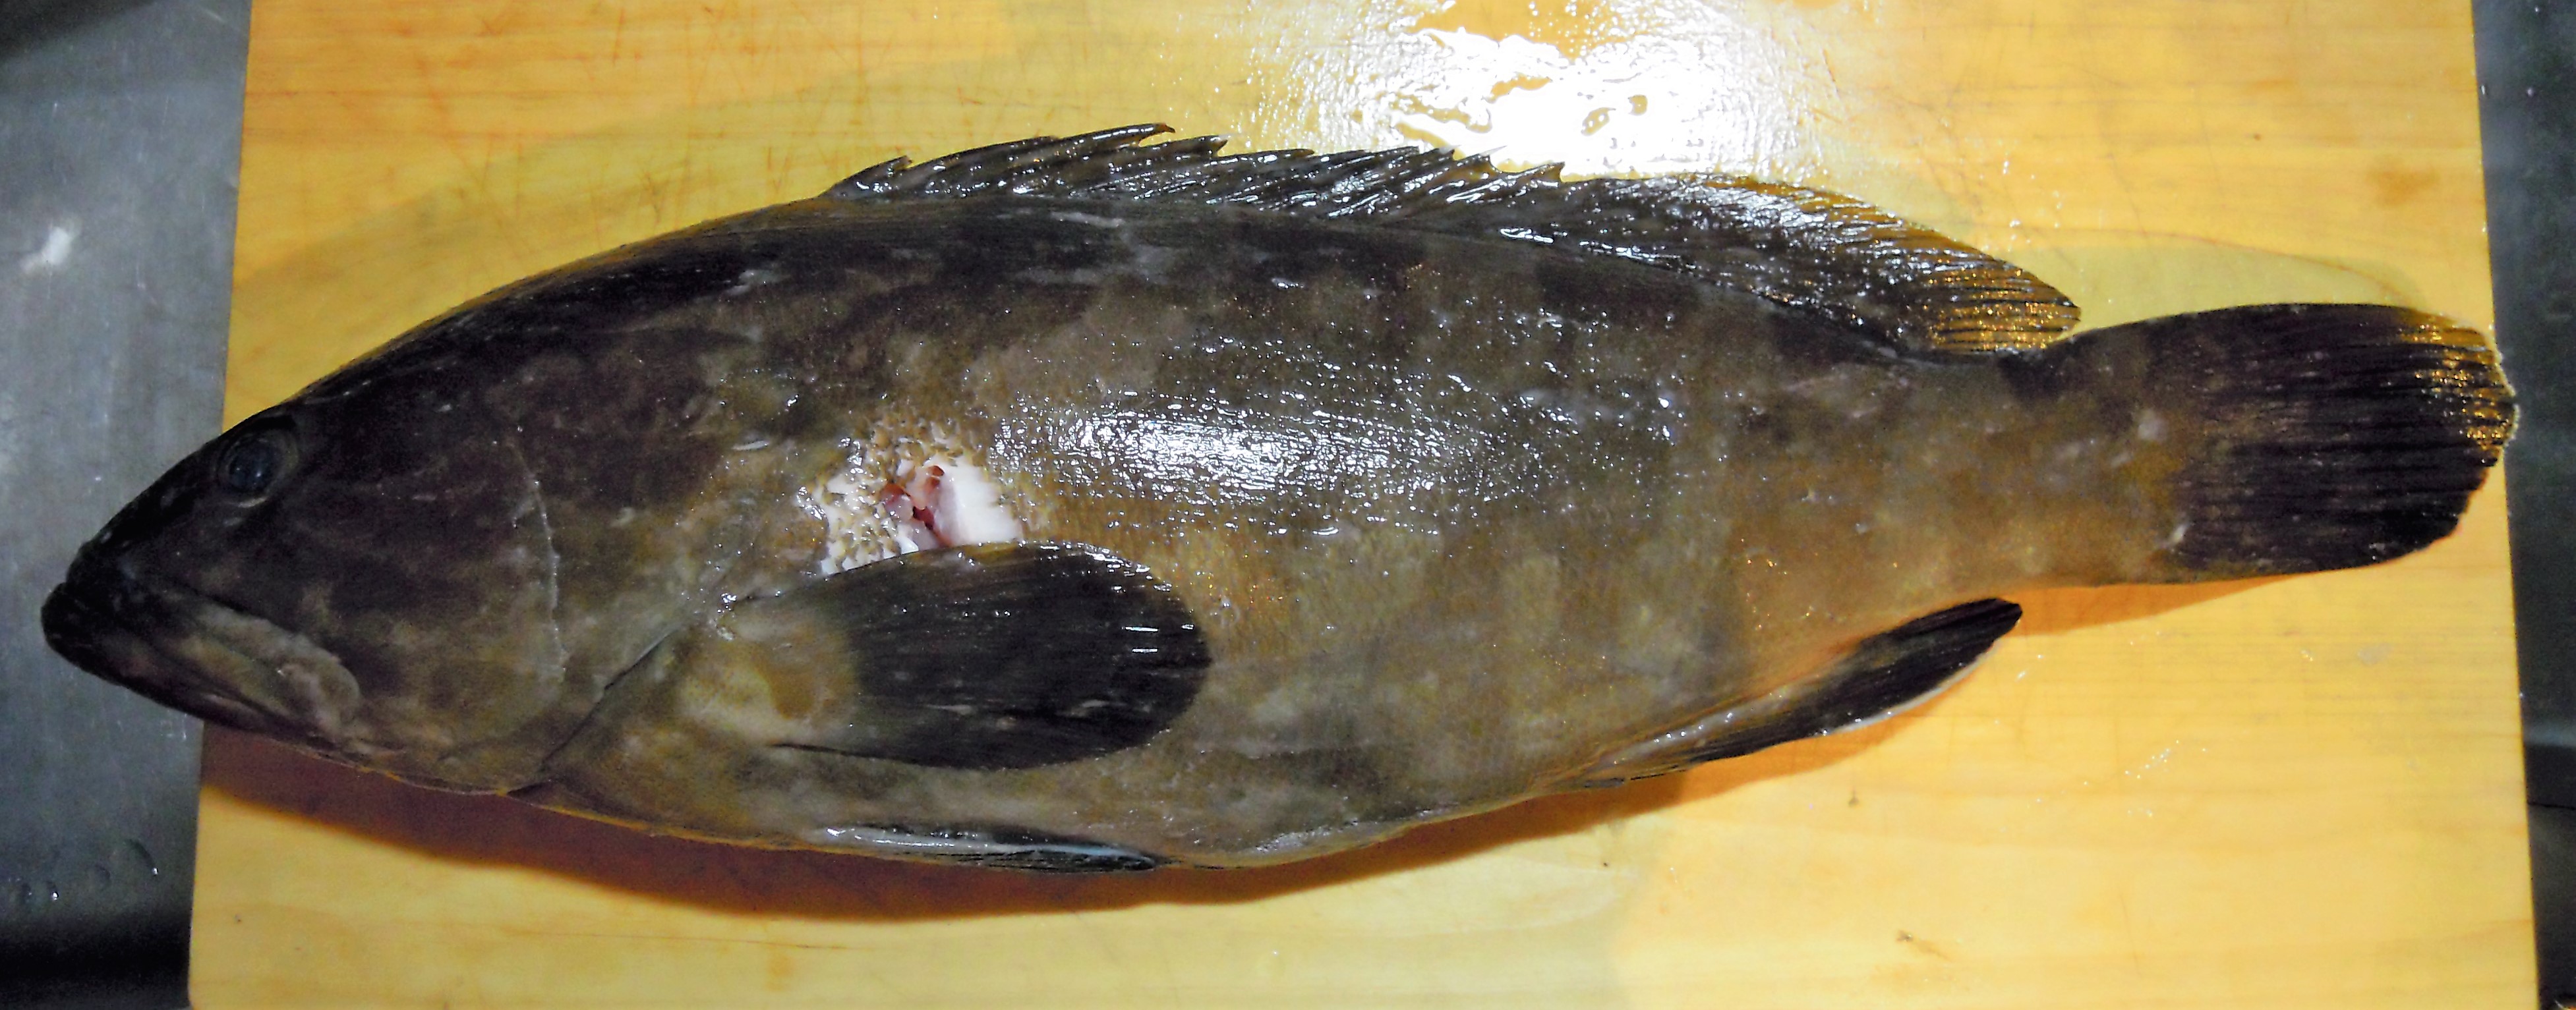 隠し切れない高級魚の風格 クエの内臓 ウロコ御膳 まるサバごはん